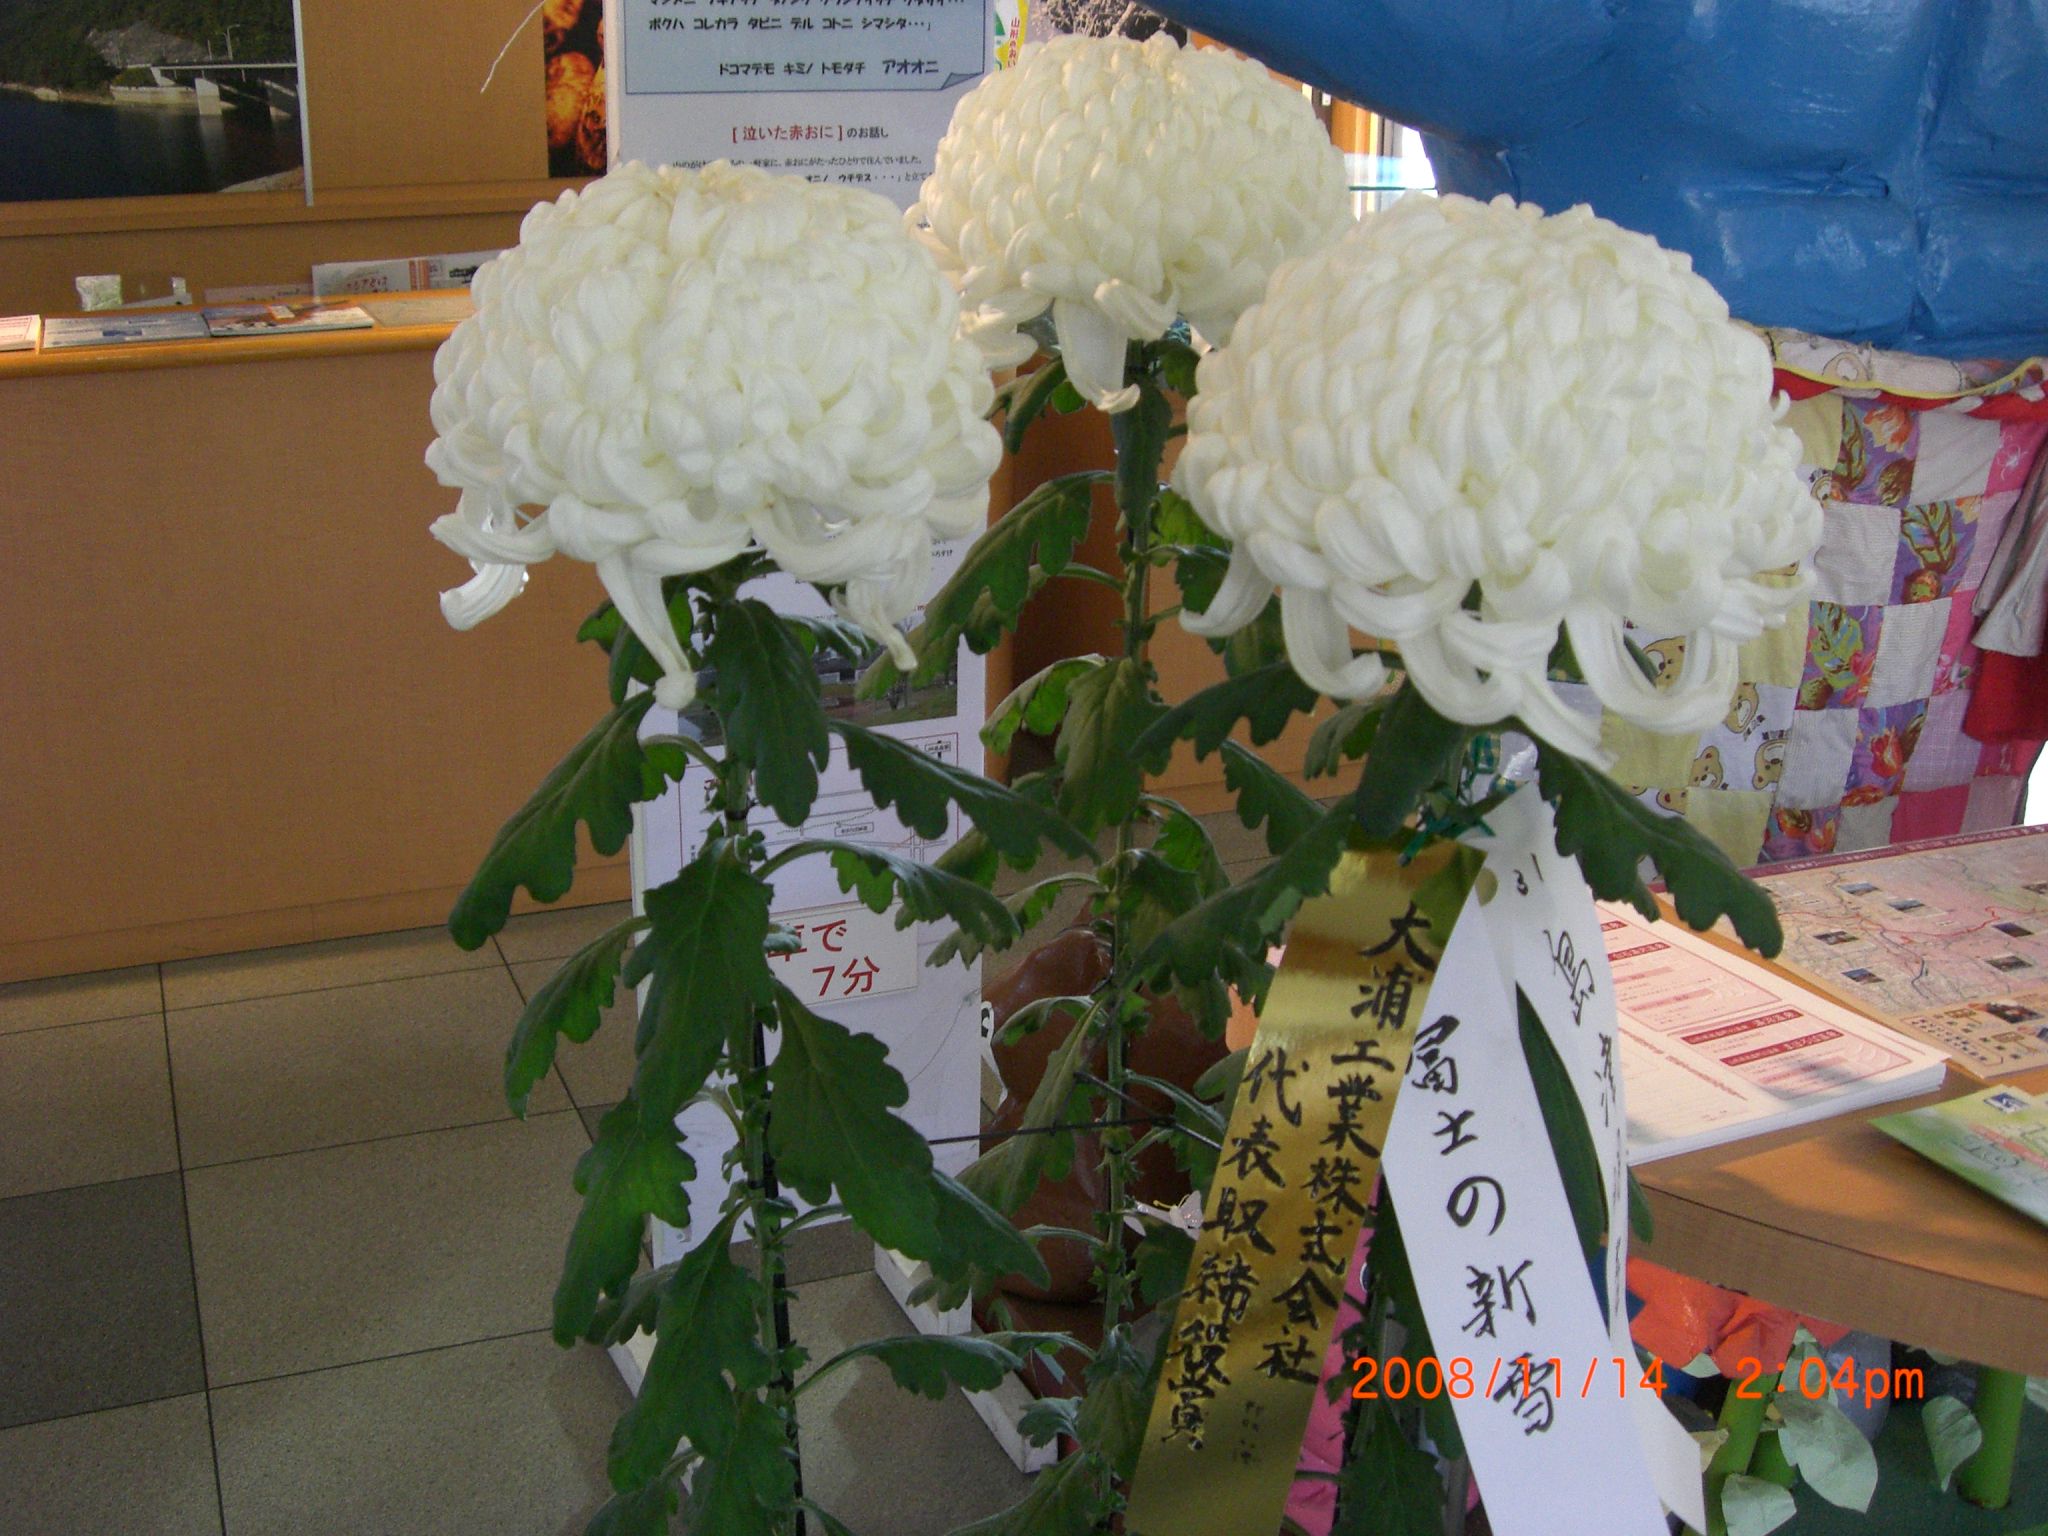 ◆菊の展示ありがとうございます。